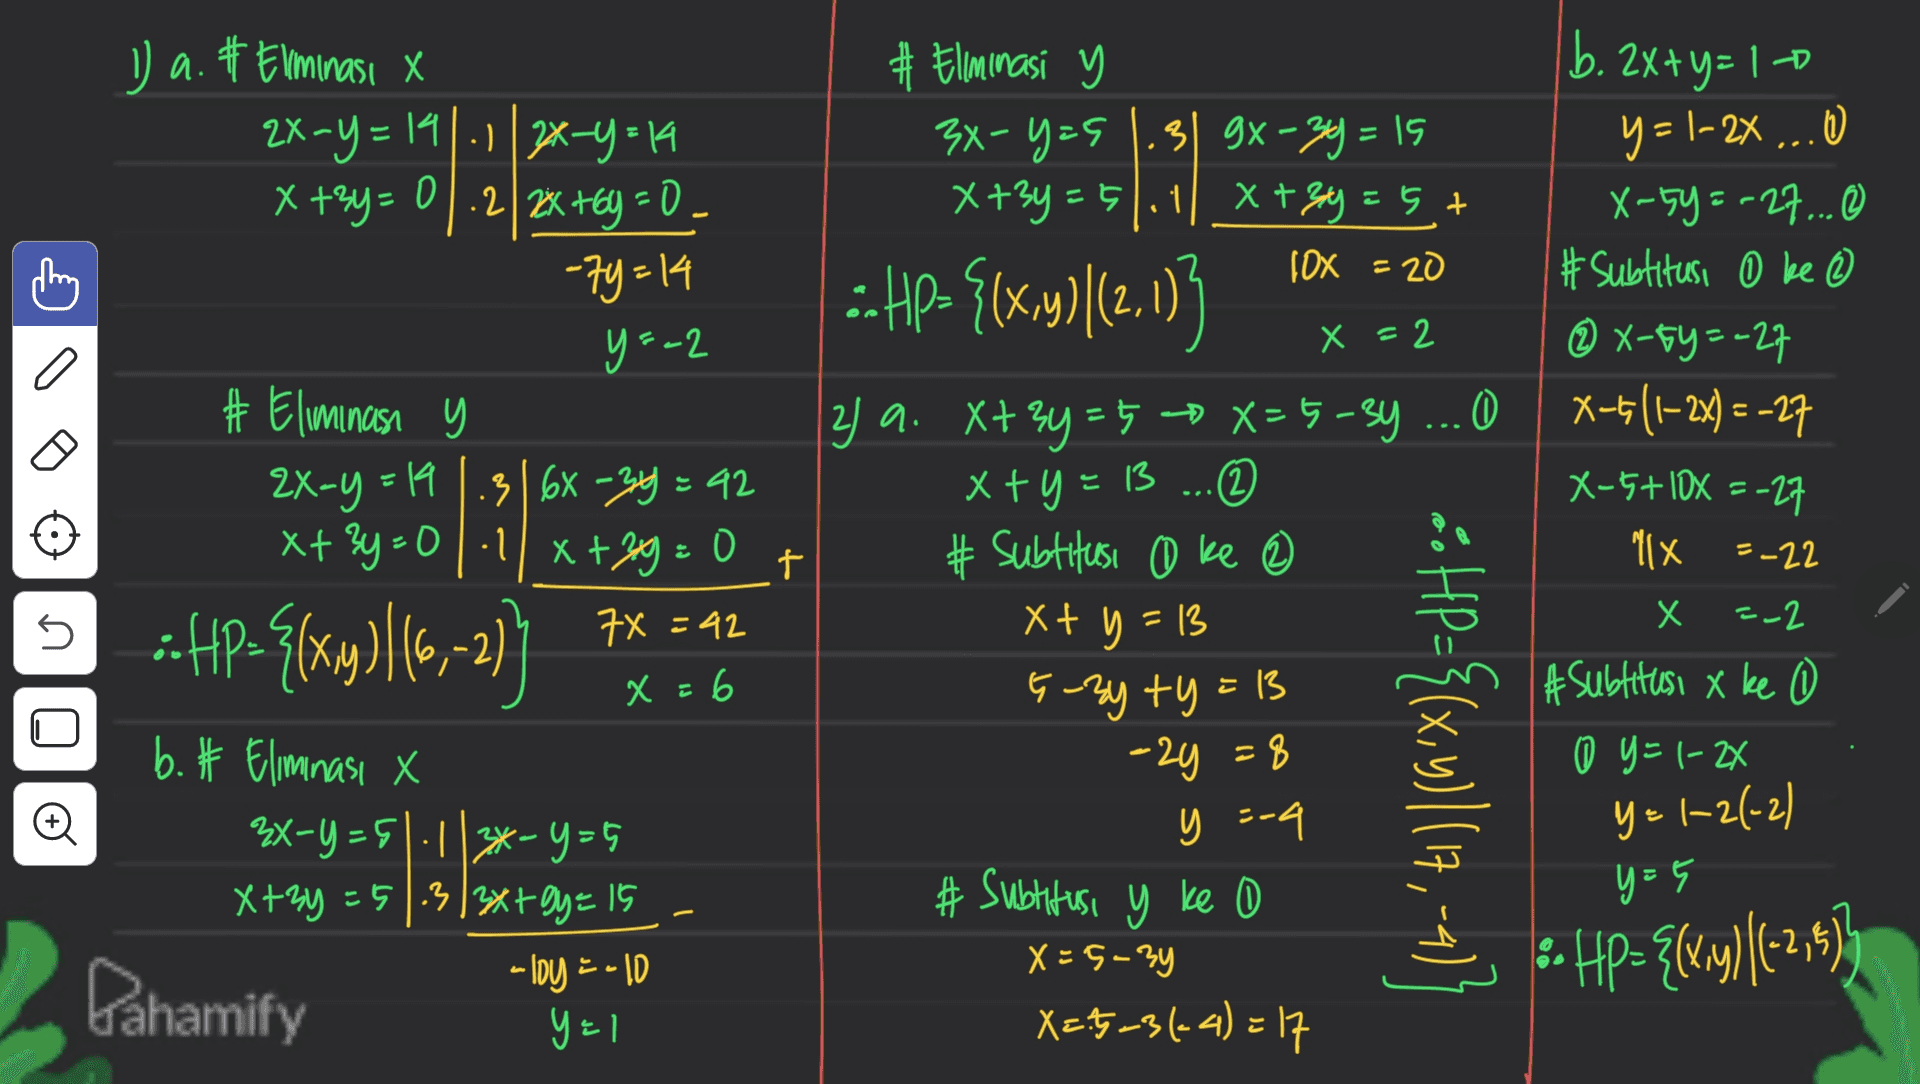 1) a. #Eliminasi X 2x=y=141-1/2x-y=14 x+3y=0.2 2x+6y=0 -79=14 y=-2 b. 2x+y= 10 9 = -2x ... ) X-5y=-27 ... # Subtitusi 0 ke 2 X-5y=-27 X-5/1-2x) = -27 X-5+10X =-27 "IX =-22 X =2 #Eliminas y 2X-Y = 19.3|6x -34 = 42 xt ?y=0|1| X+39 = 0 7X=42 # Elminasi y 3x-y=9 3) gx-3y = 15 X+3y=51.1 + =51.1 X+3y = 5 + 10x = 20 -- HP> {(x,y)|(2,113 2) a. X+3y=5 X=5-3y ... 0 x+y=13 x+ = 1 ... 2 # Subtitusi @ ke X+ y = 13 E-By ty=13 -2y =8 y =-4 # Subtitusi y ke 0 X=5-3y X=-3-31-4)=17 t Х. =-2 U -ftp-{{xy)(5,-2) ] x = 6 #subtitusi x ke 0 y=1-24 ** HP={(x,y)| (17,-4) b. # Eliminasi X 3x-y=5|-1|3*-y=5 X+3y=51.3/3x+y = 15 -loy = -10 y=1 o y = 1-2(-2) y=5 -- ) Hp={(x,y)|(-2, -2,5) Dahamify 